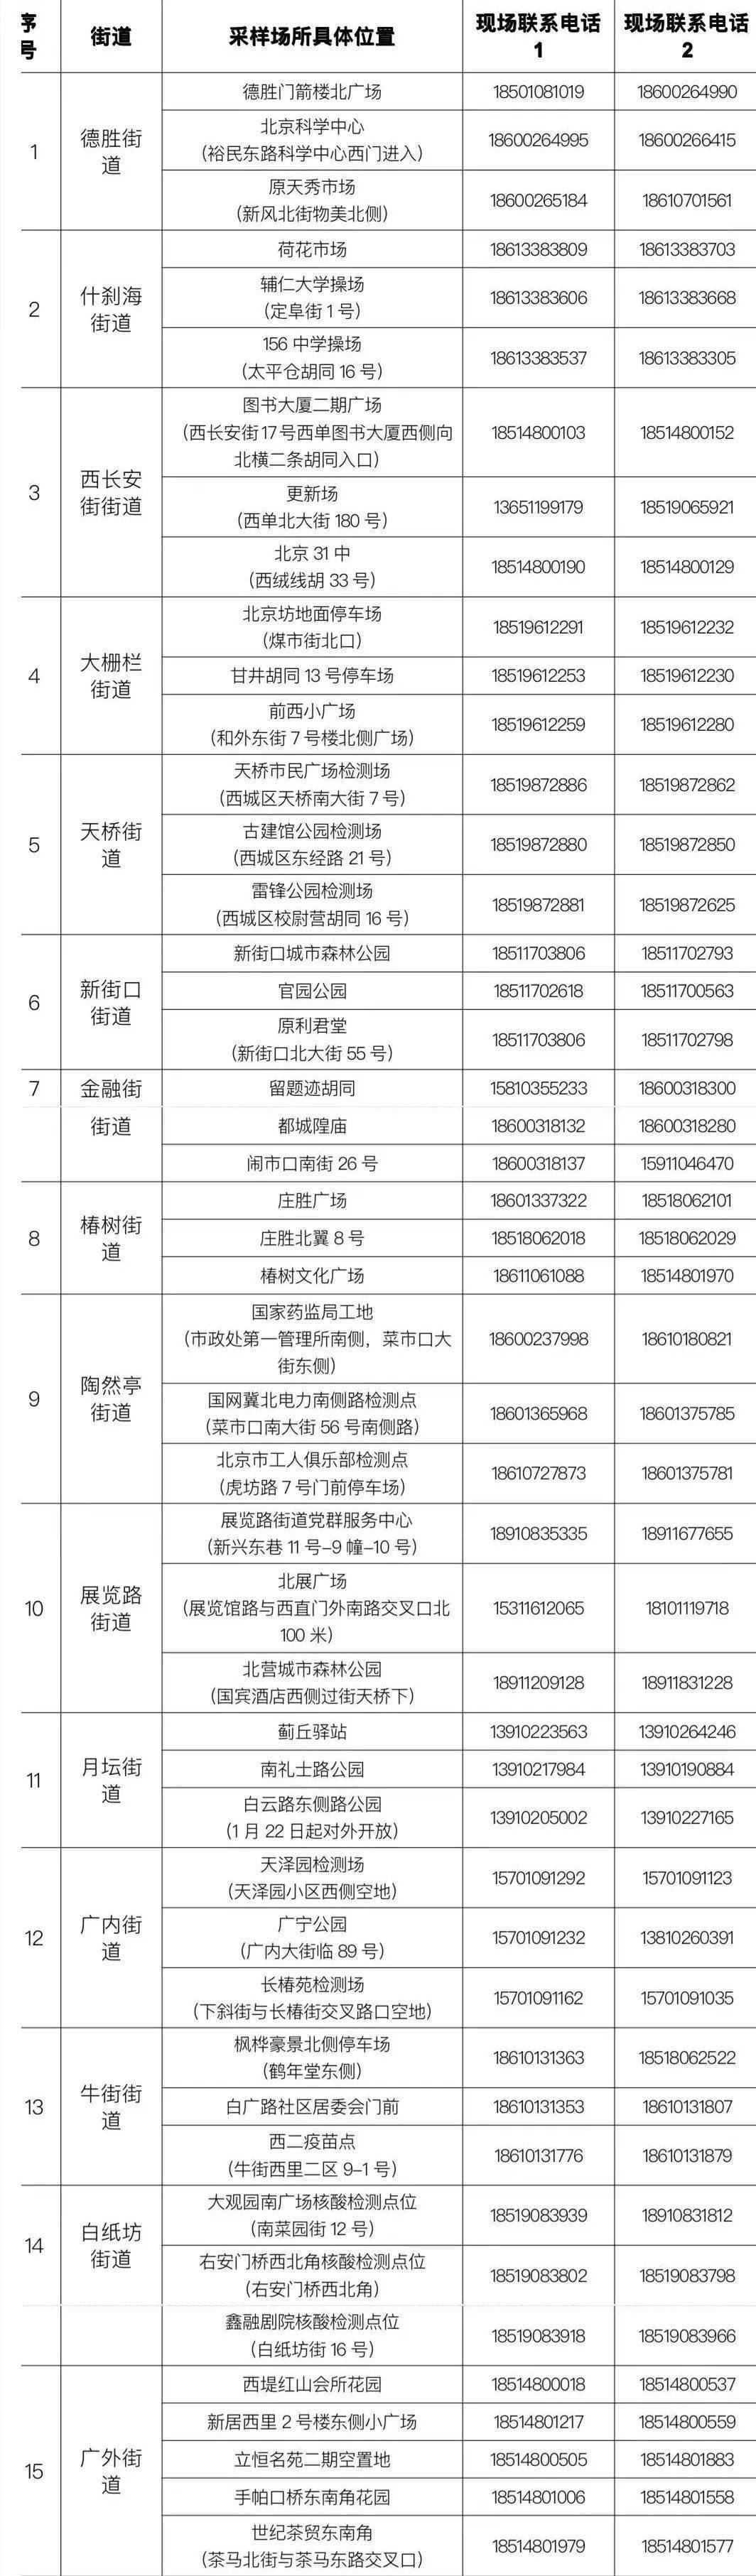 人员|北京西城开放47个临时检测点，供“健康宝”弹窗提示人员前往采样